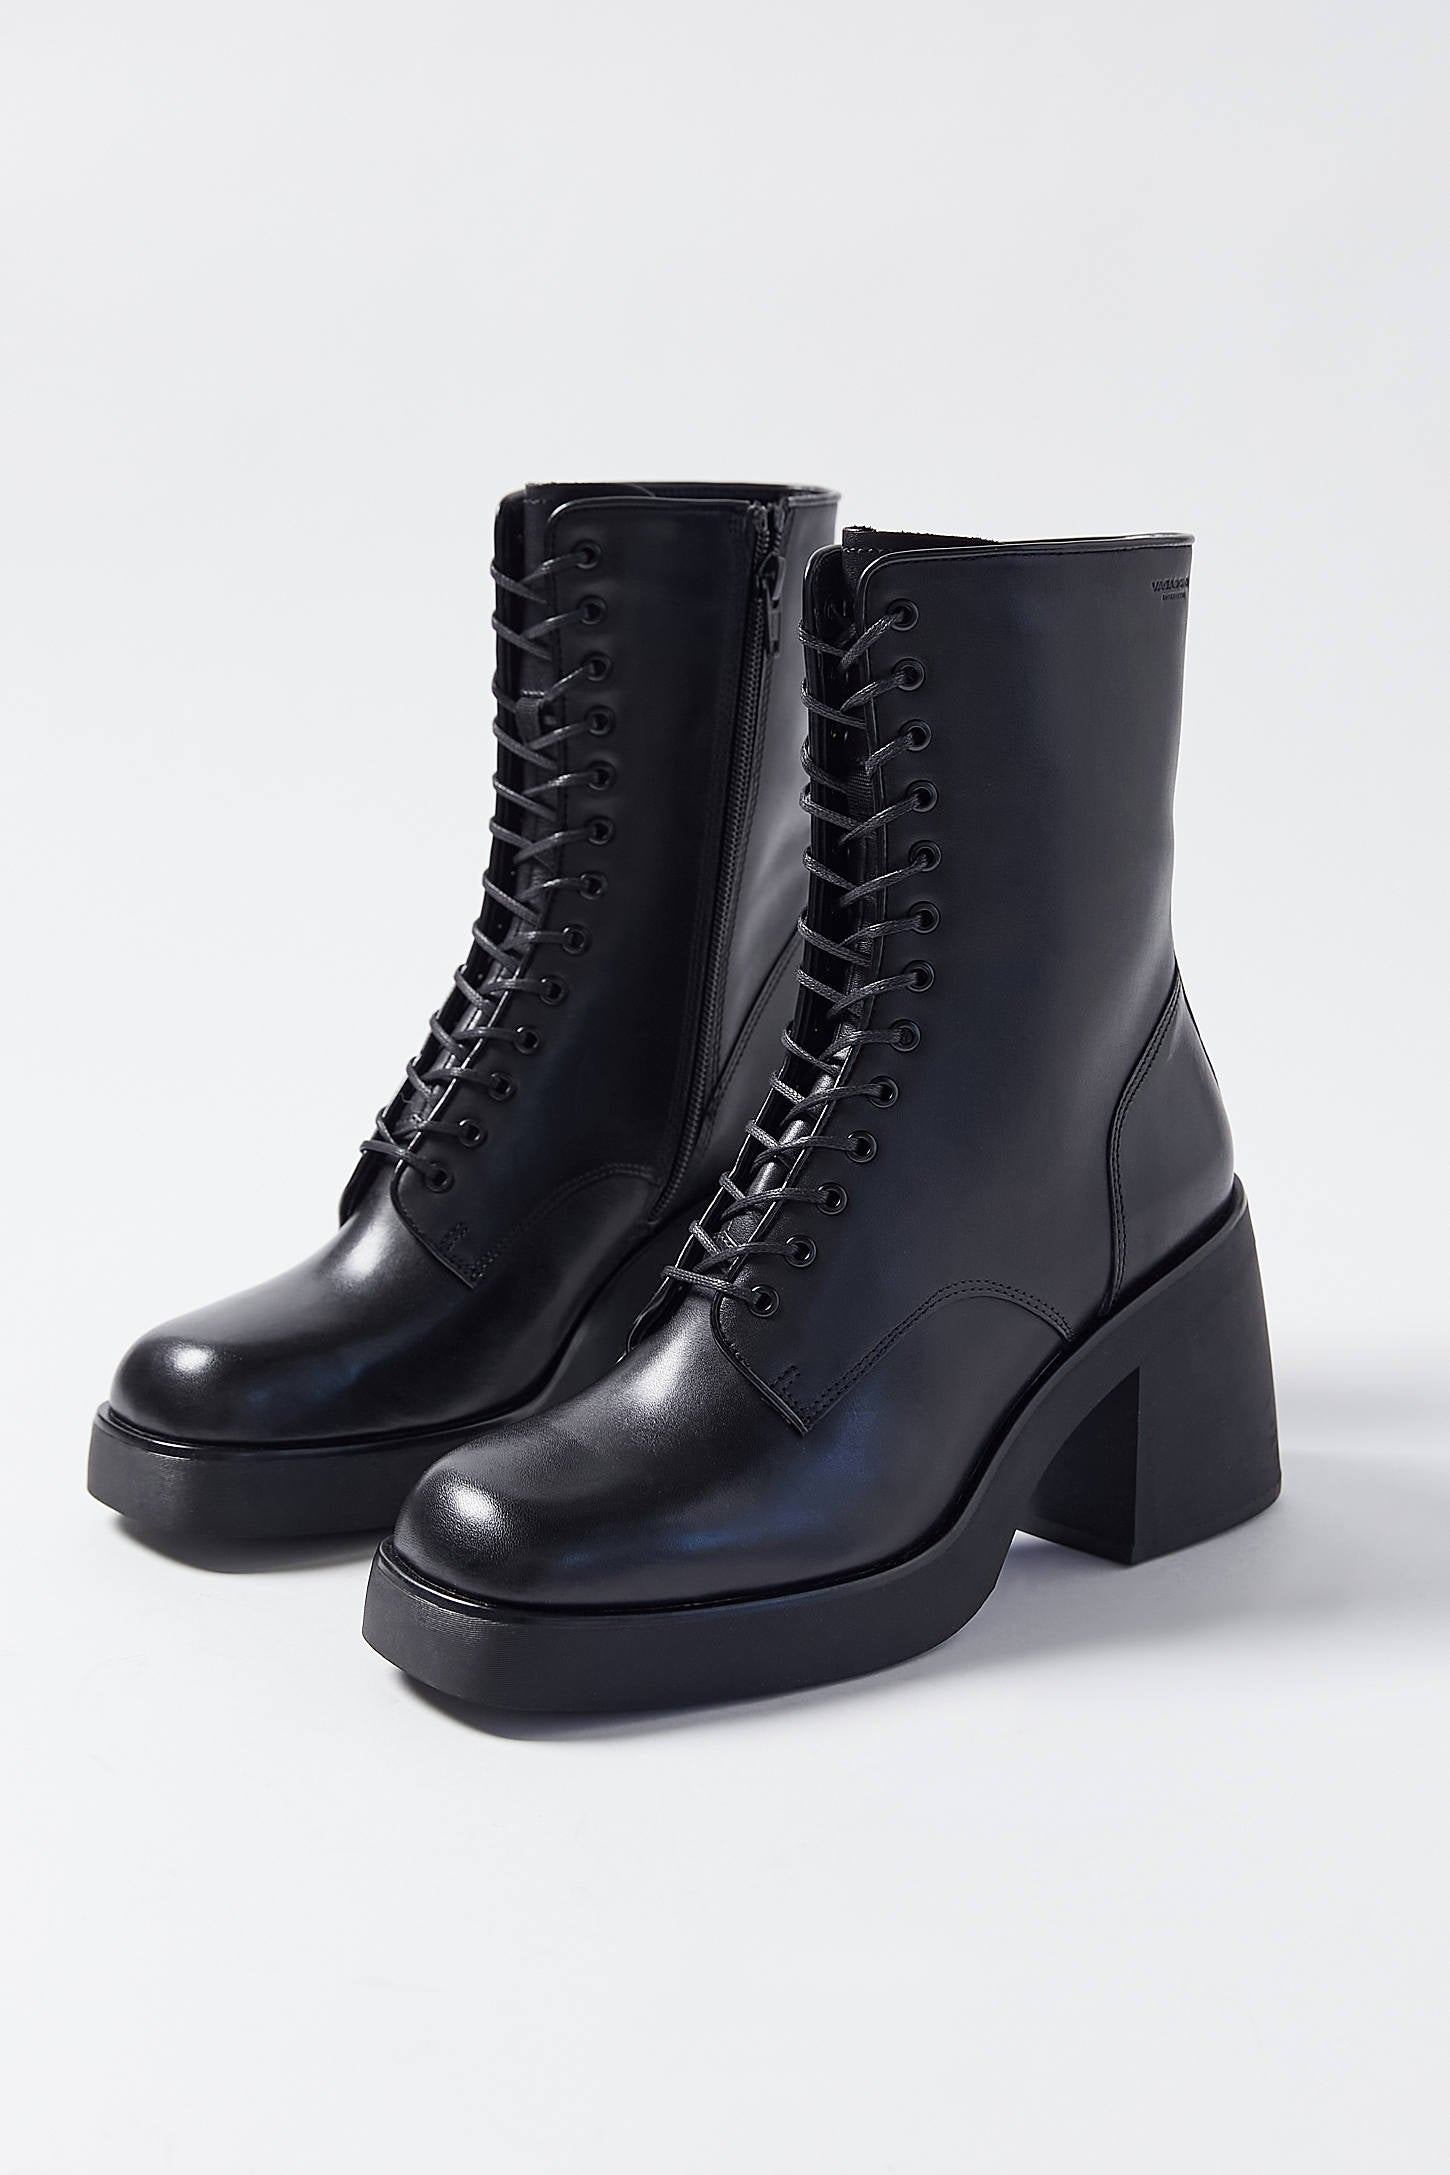 Vagabond Shoemakers Brooke Lace-Up Boot – Pit-a-Pats.com